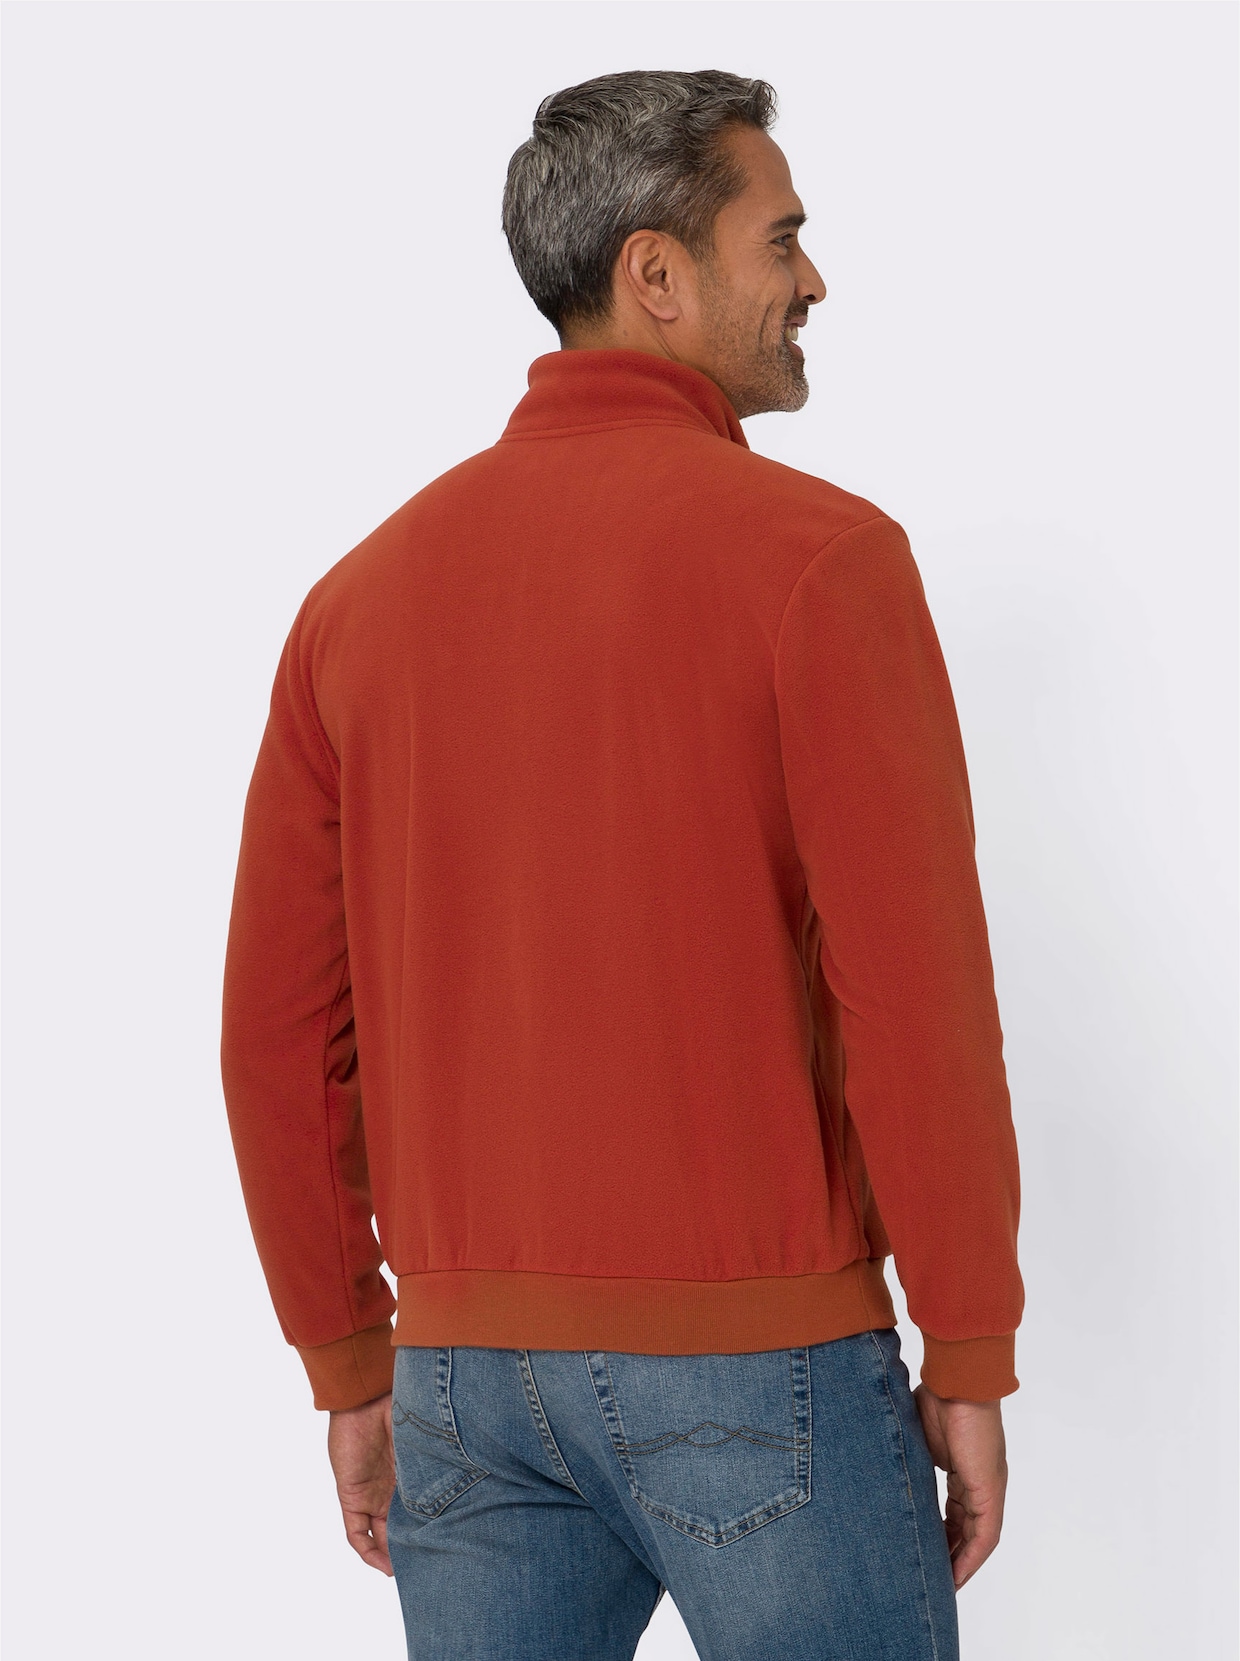 Flaušové tričko - hrdzavočervená